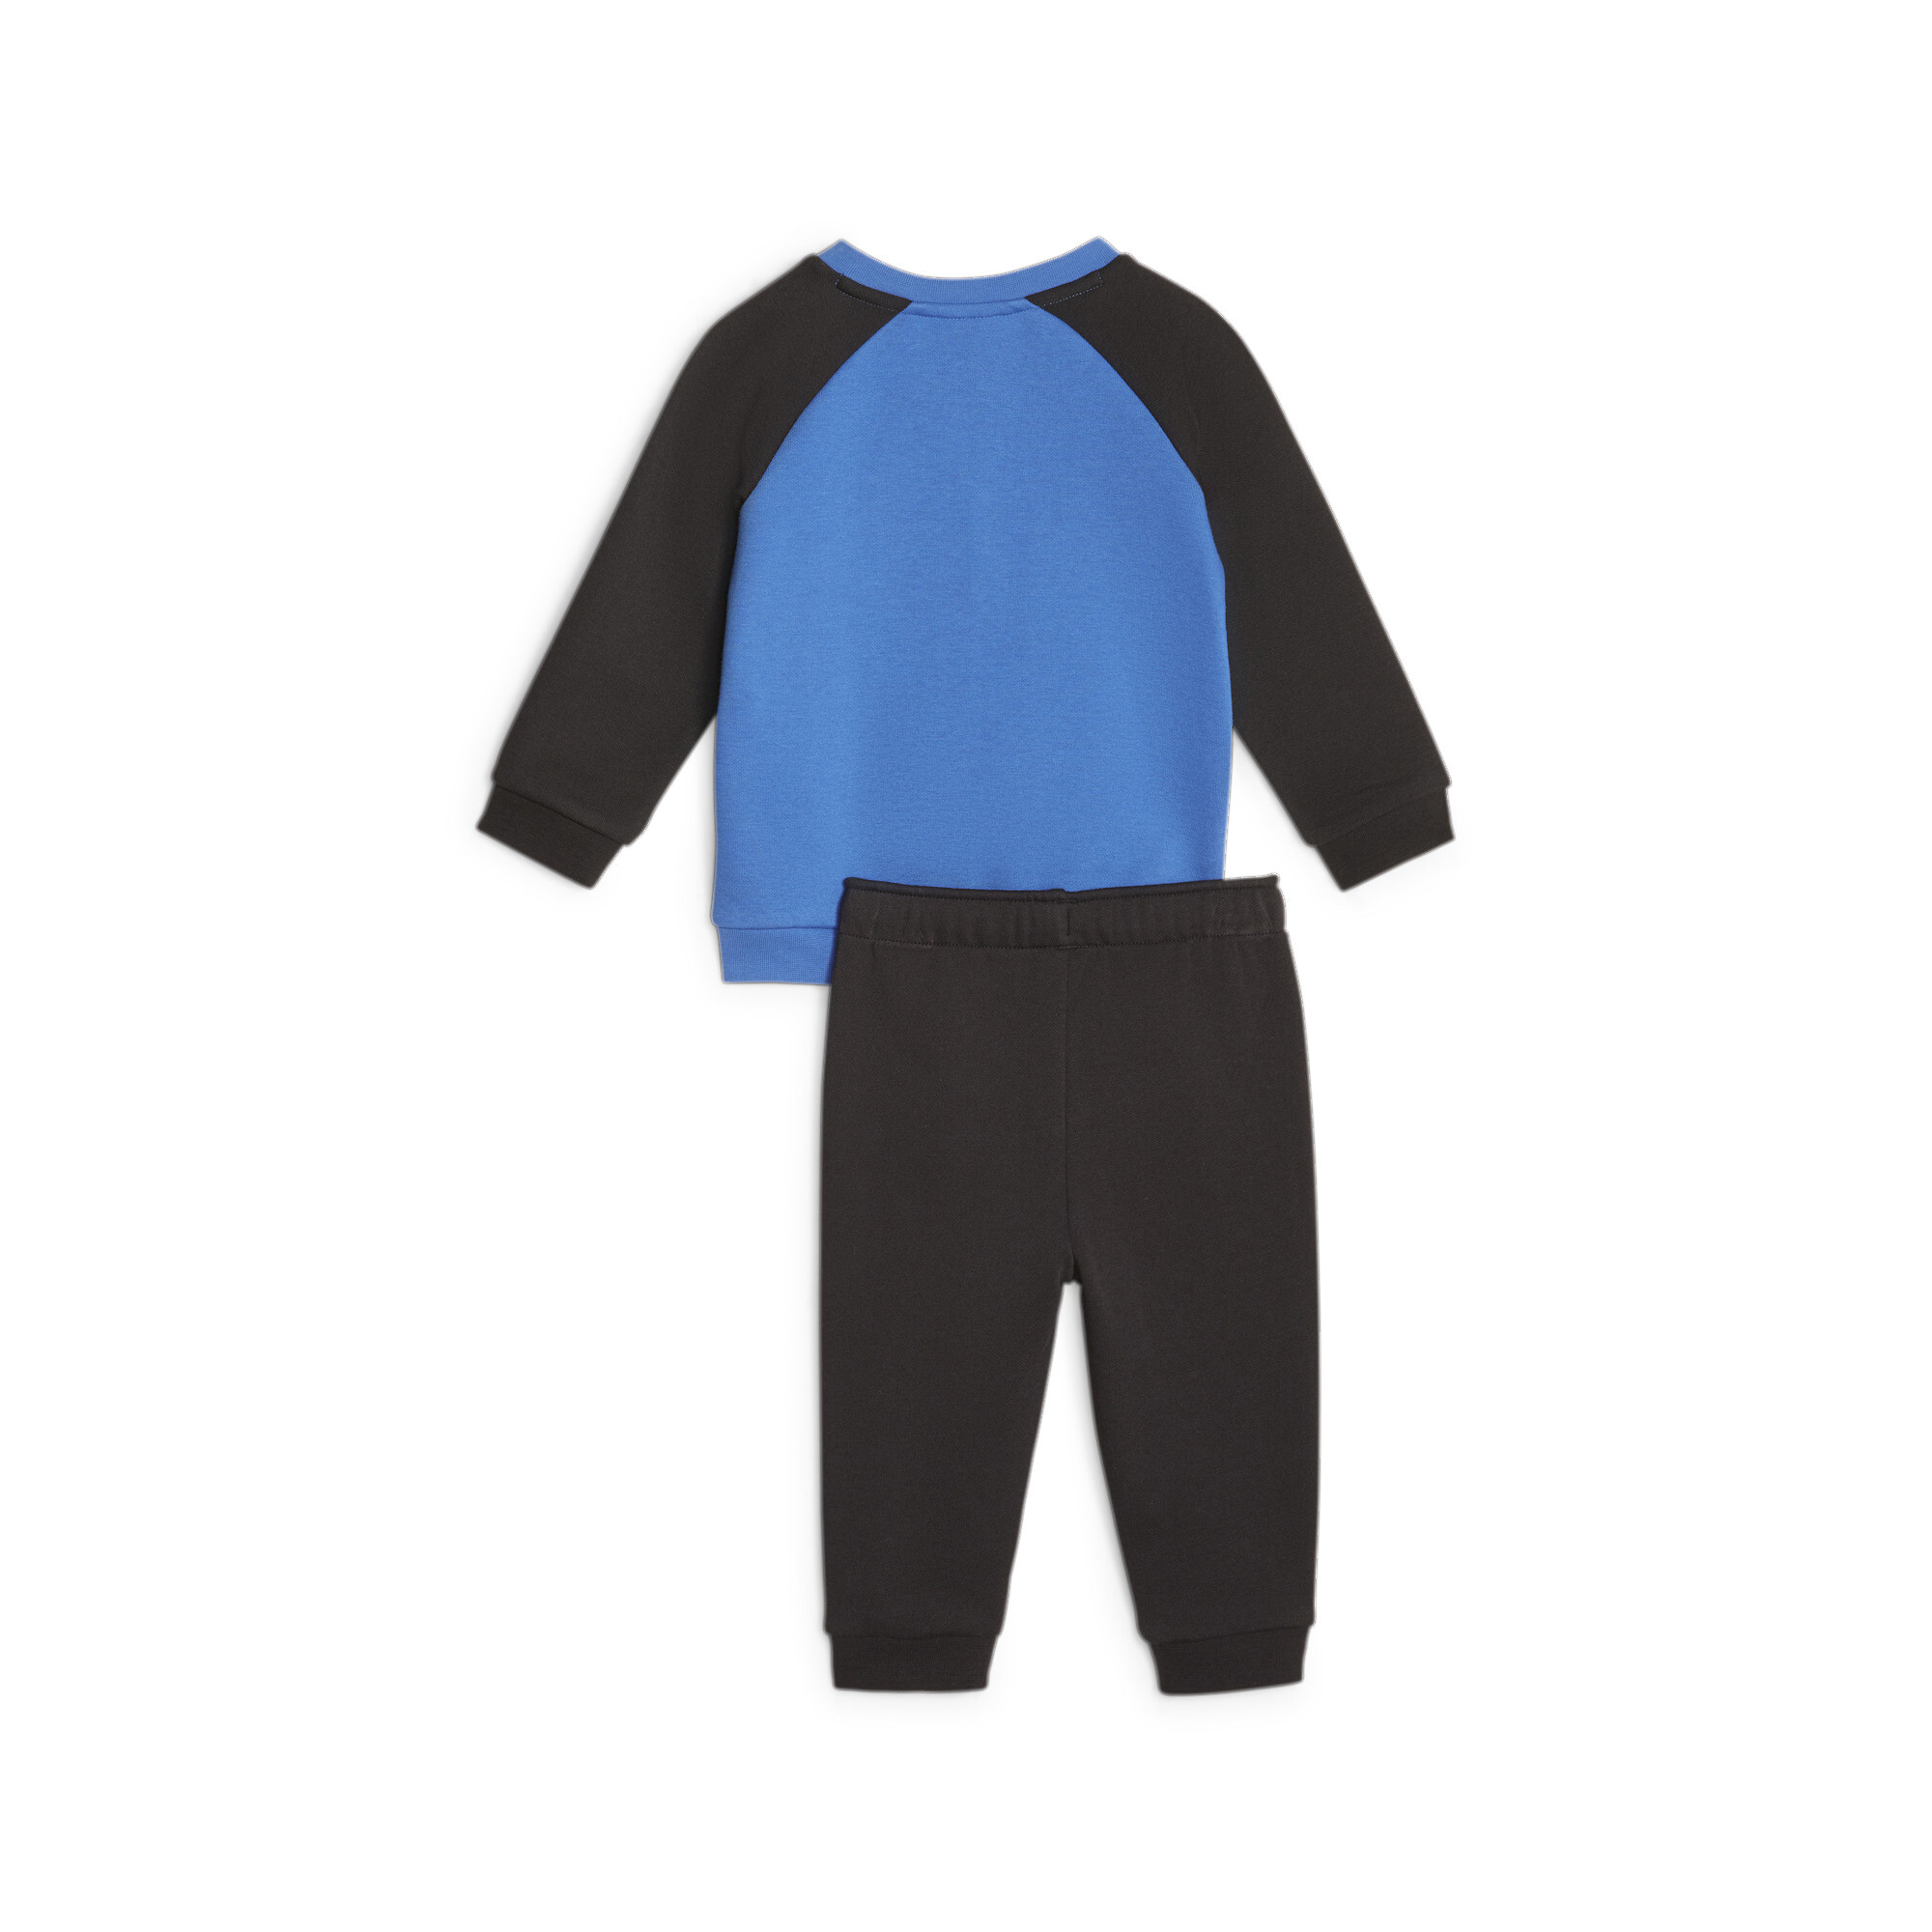 Puma Minicats Essentials Raglan Babies' Jogger Set, Blue, Size 1-2Y, Clothing